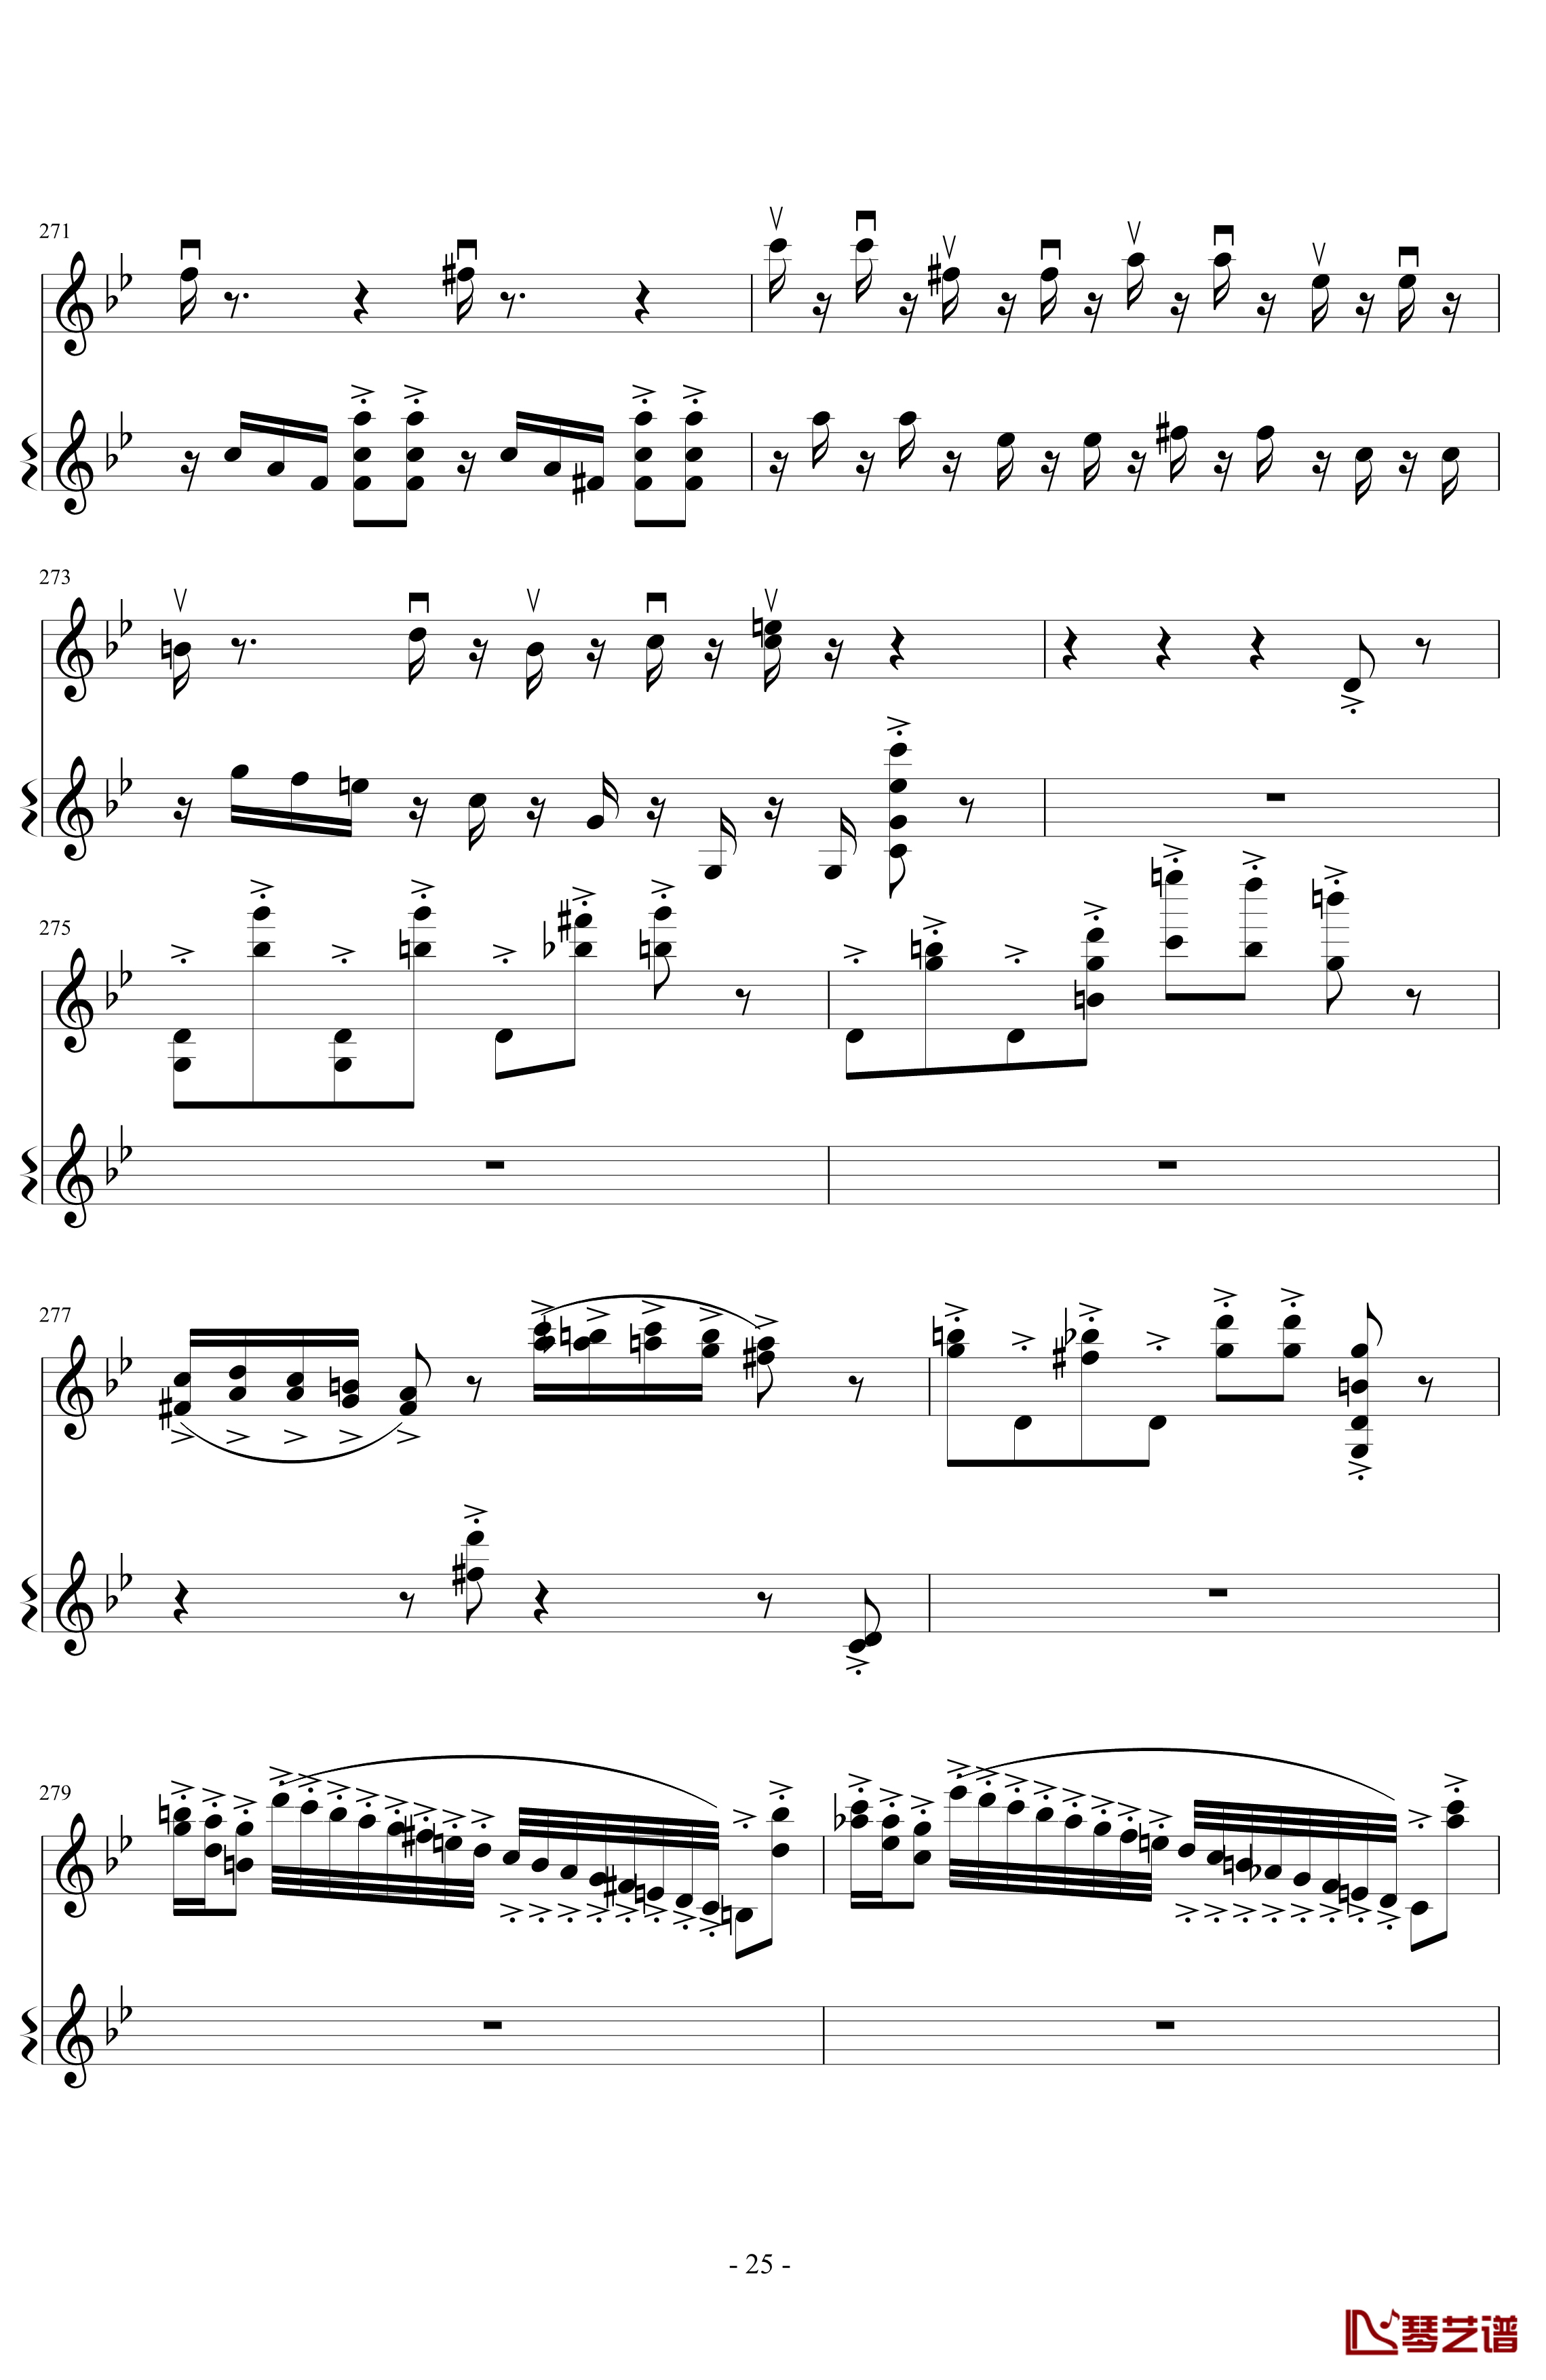 意大利国歌变奏曲钢琴谱-DXF25